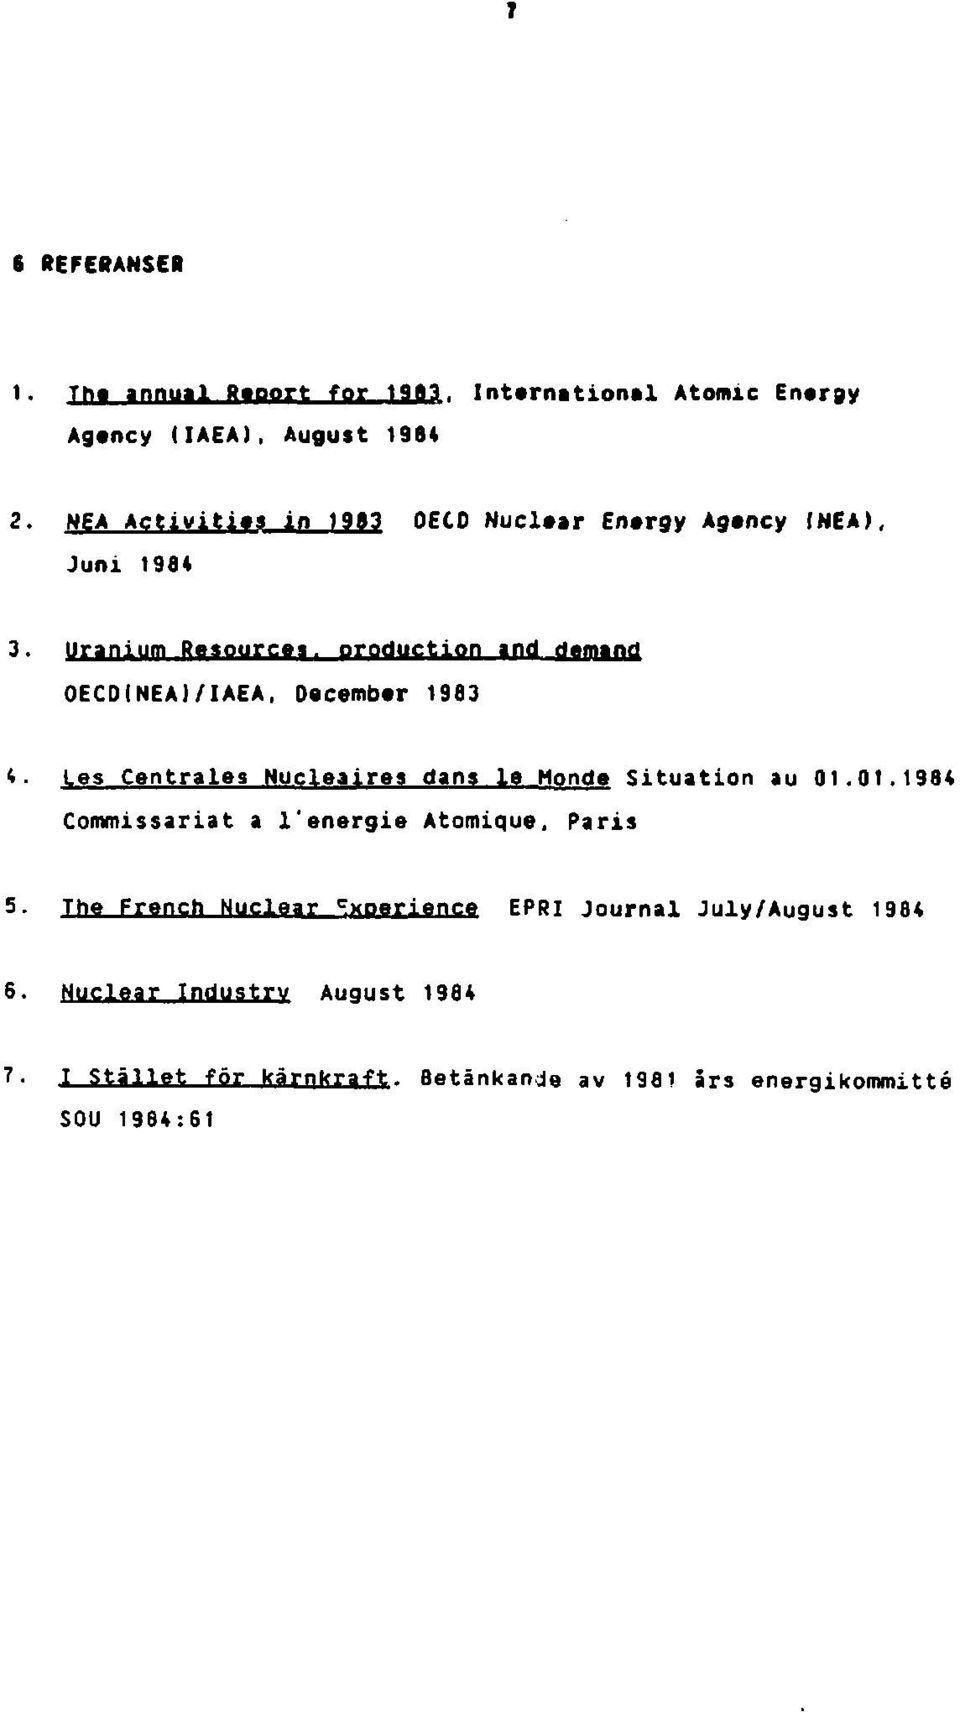 Uranium Resources, production and demand OECDINEAI/IAEA, December 1983 4. Les Centrales Nucleaires dans le Monde Situation au 01.